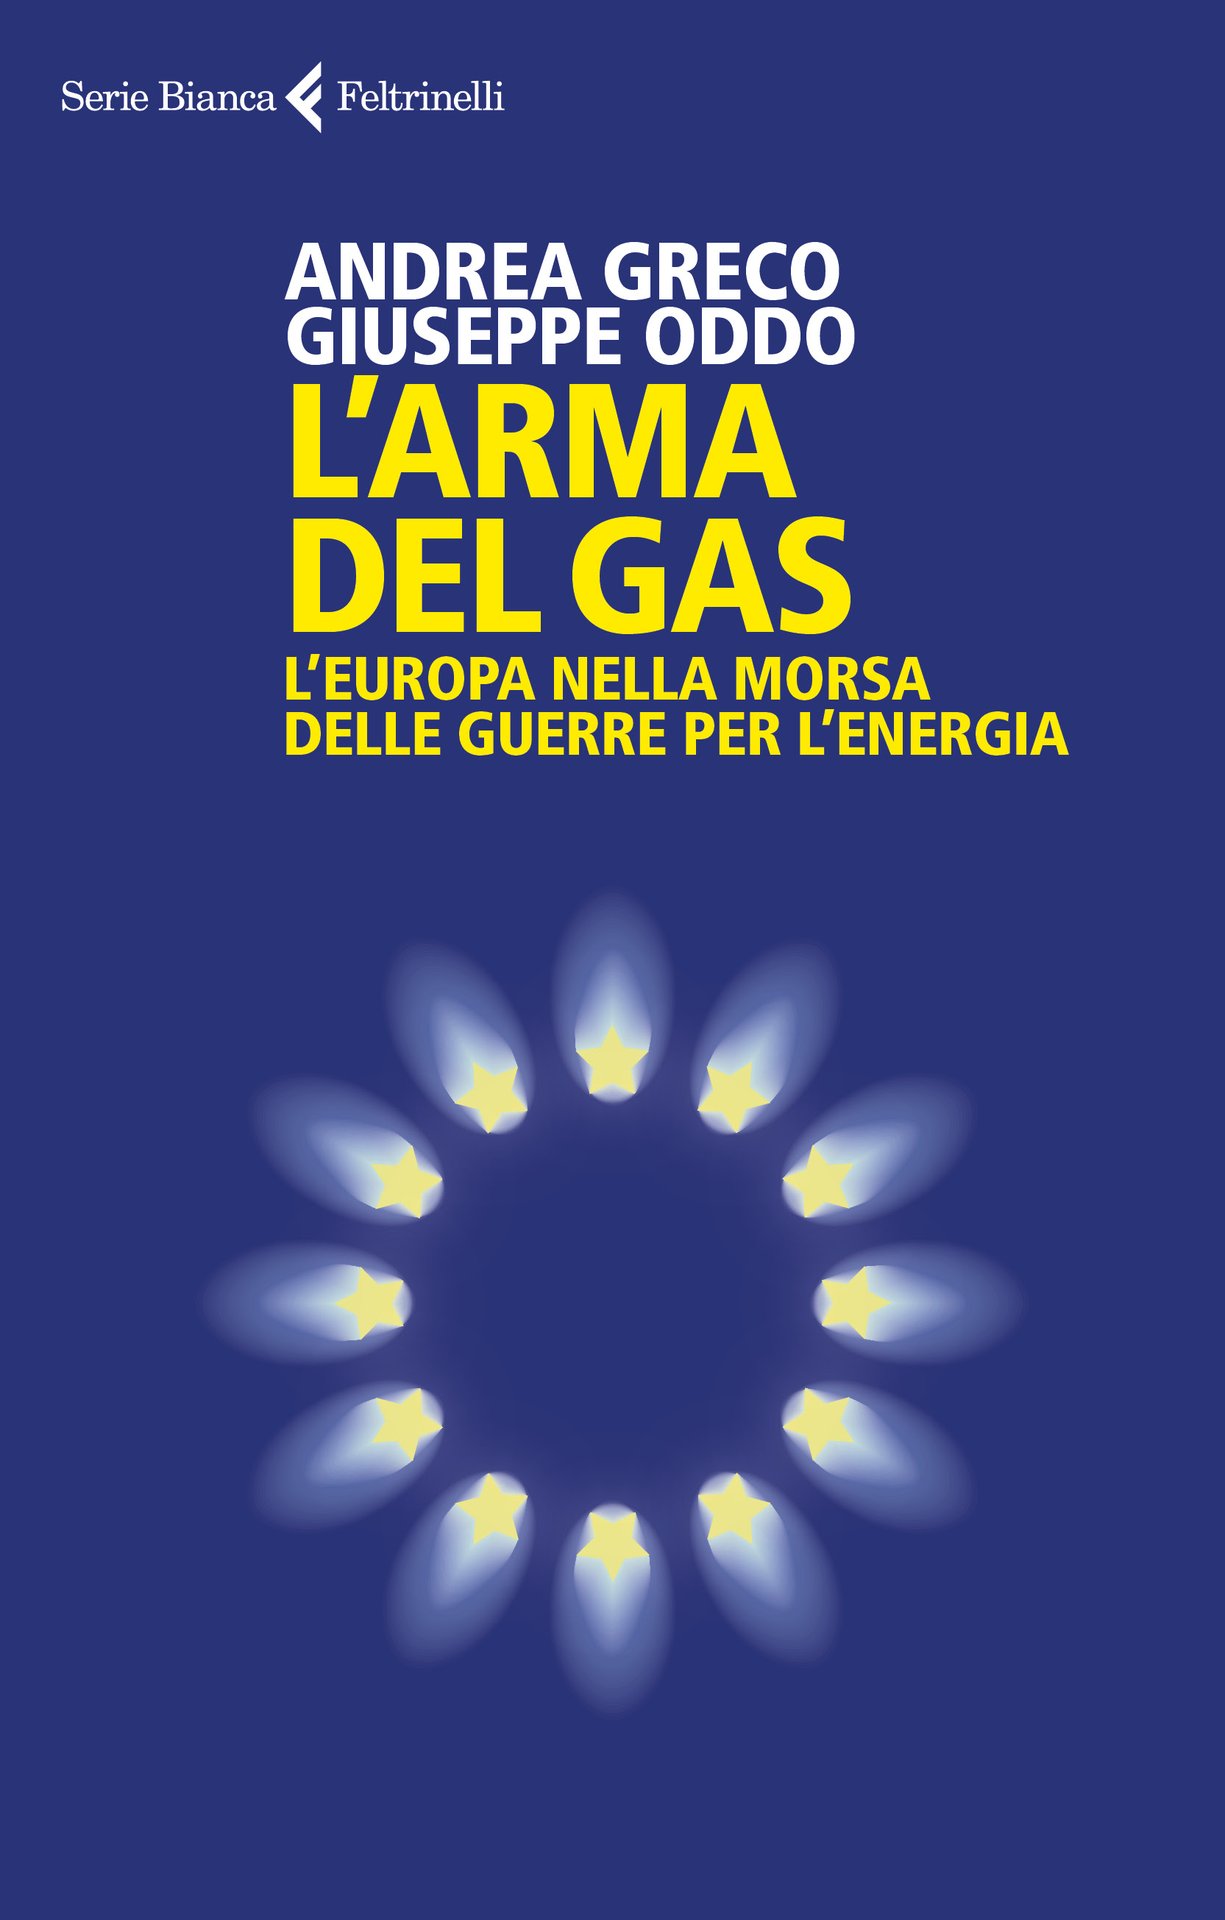 Andrea Greco e Giuseppe Oddo presentano "L'arma del gas" al Circolo PD Aniasi